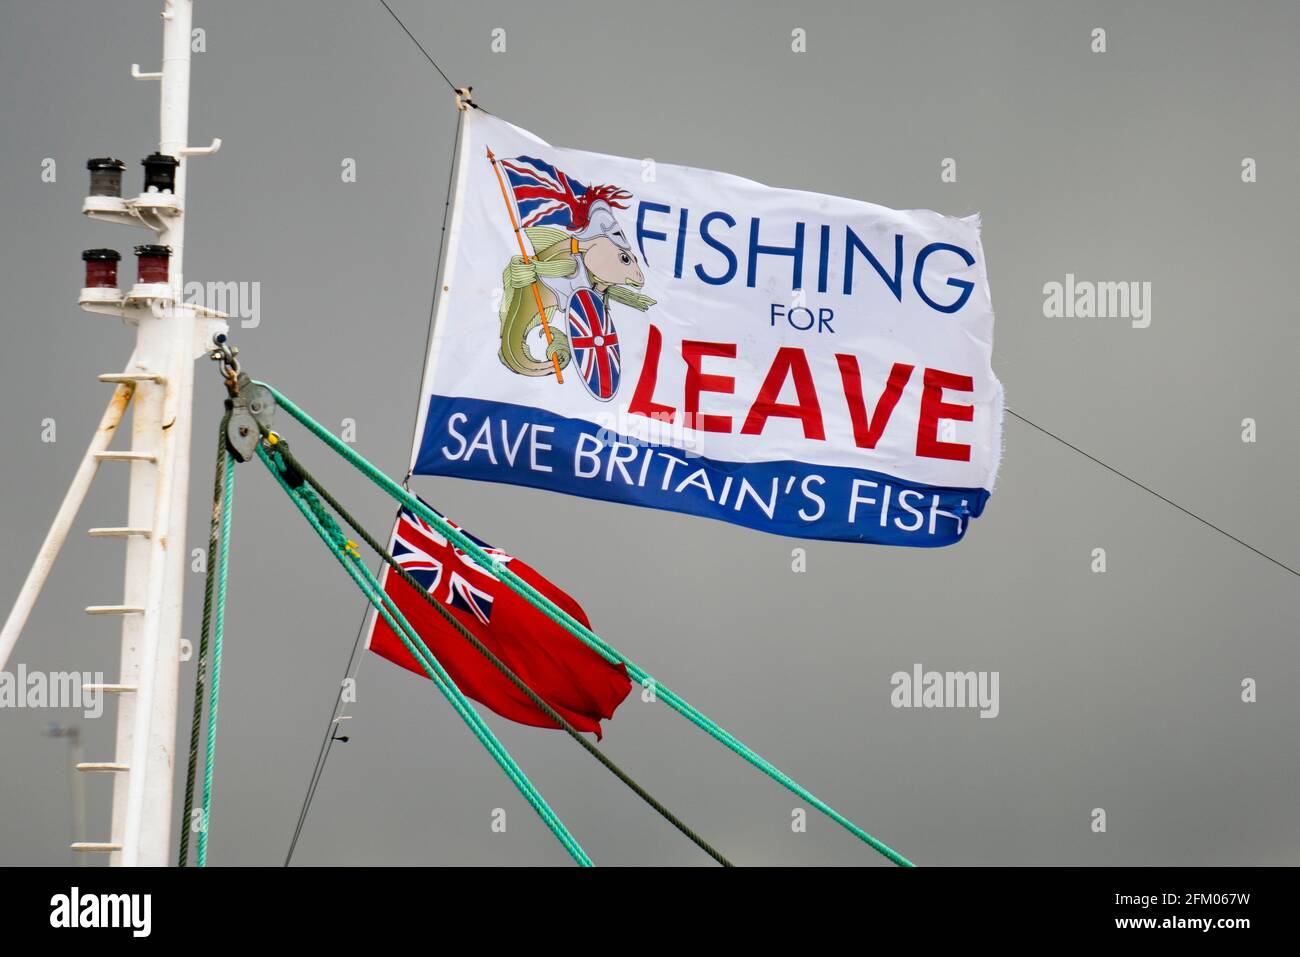 Pesca per lasciare bandiera che batte su barca da pesca a Troon, Scozia. L’obiettivo del gruppo è ripristinare il controllo delle acque di pesca e delle politiche della pesca del Regno Unito Foto Stock